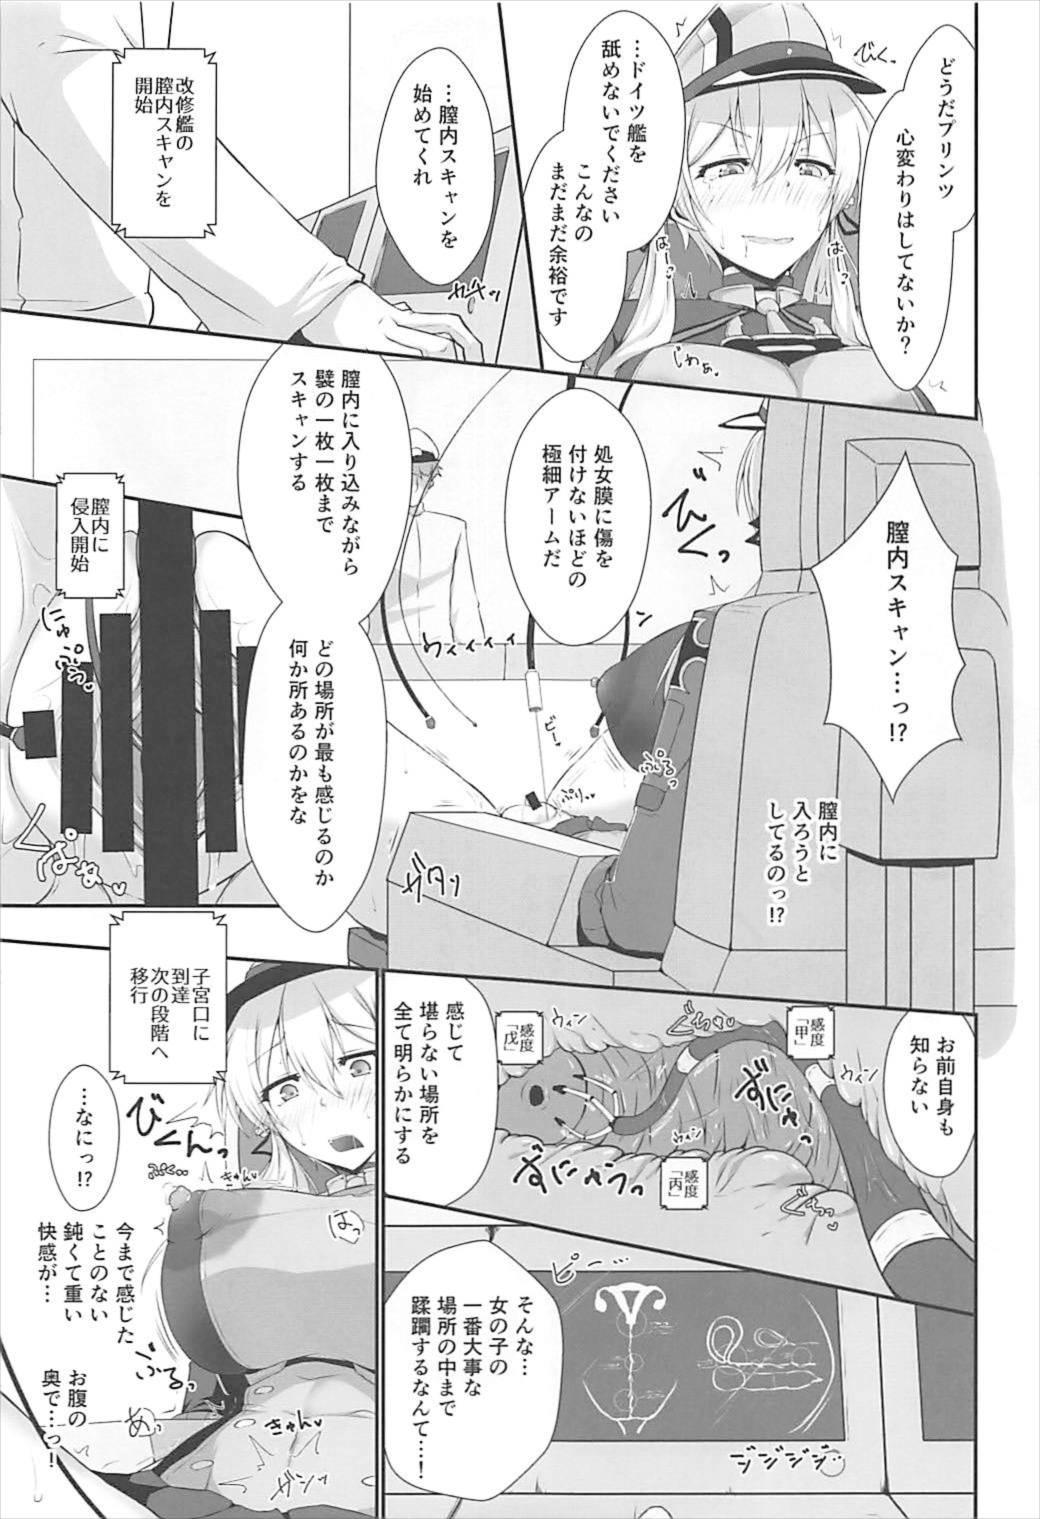 Sucks Doitsukan wa Kikaikan ni Kussuru Hazu ga Nain dakara! - Kantai collection Whatsapp - Page 9